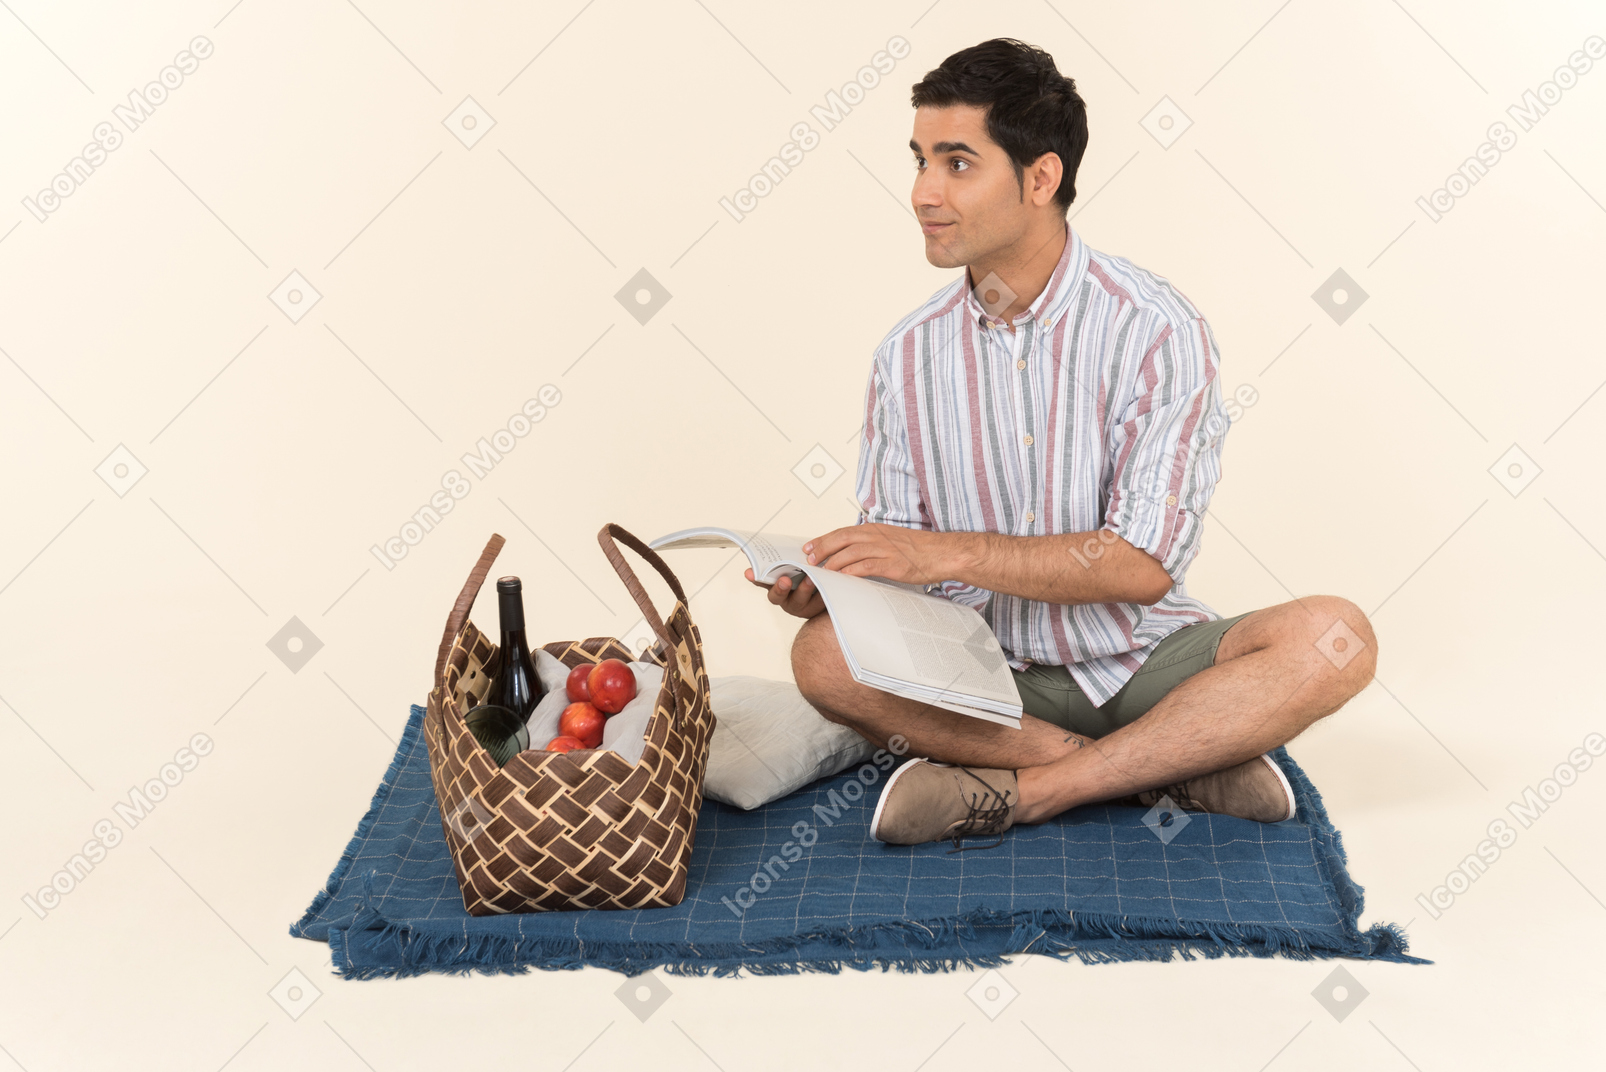 Giovane ragazzo caucasico seduto sulla coperta e tenendo aperta la rivista